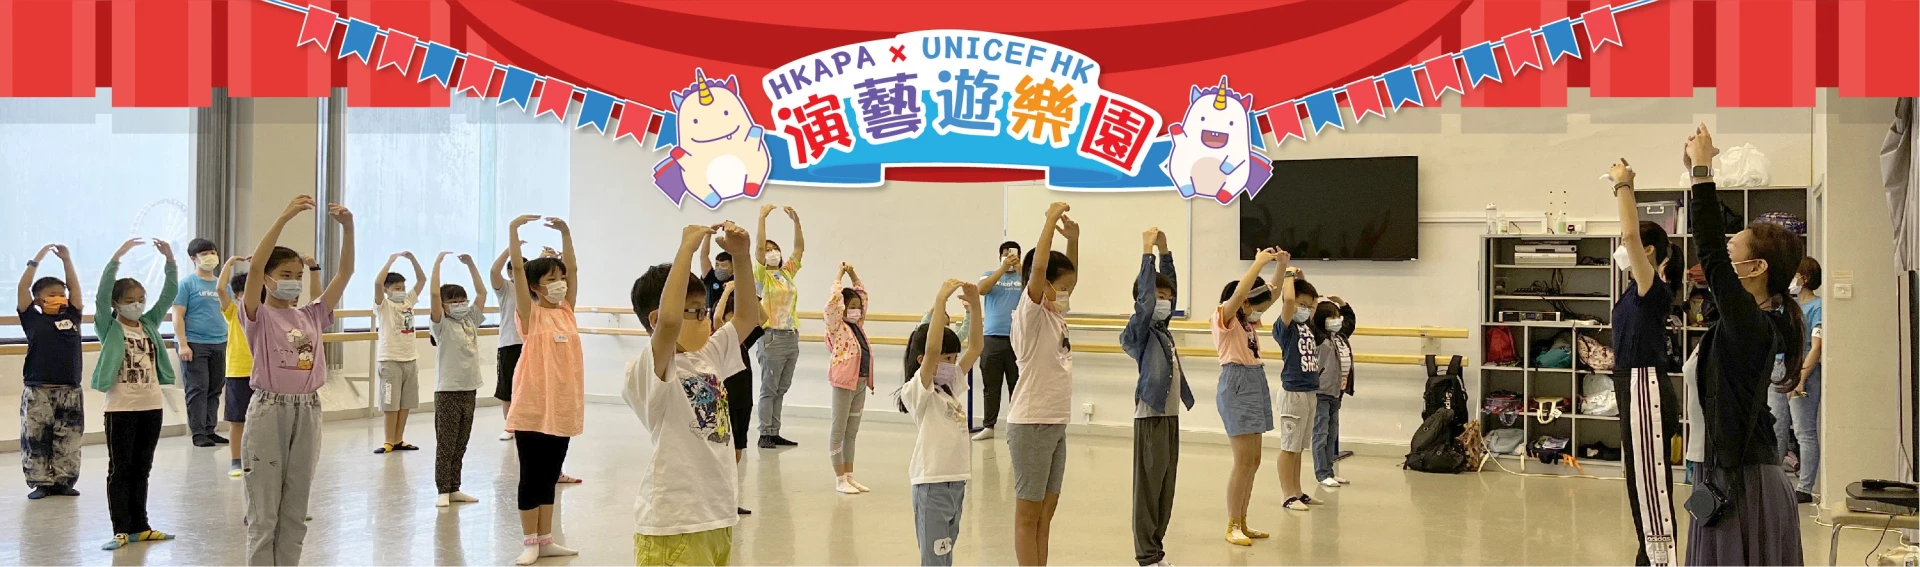 演藝遊樂園 HKAPA x UNICEF HK